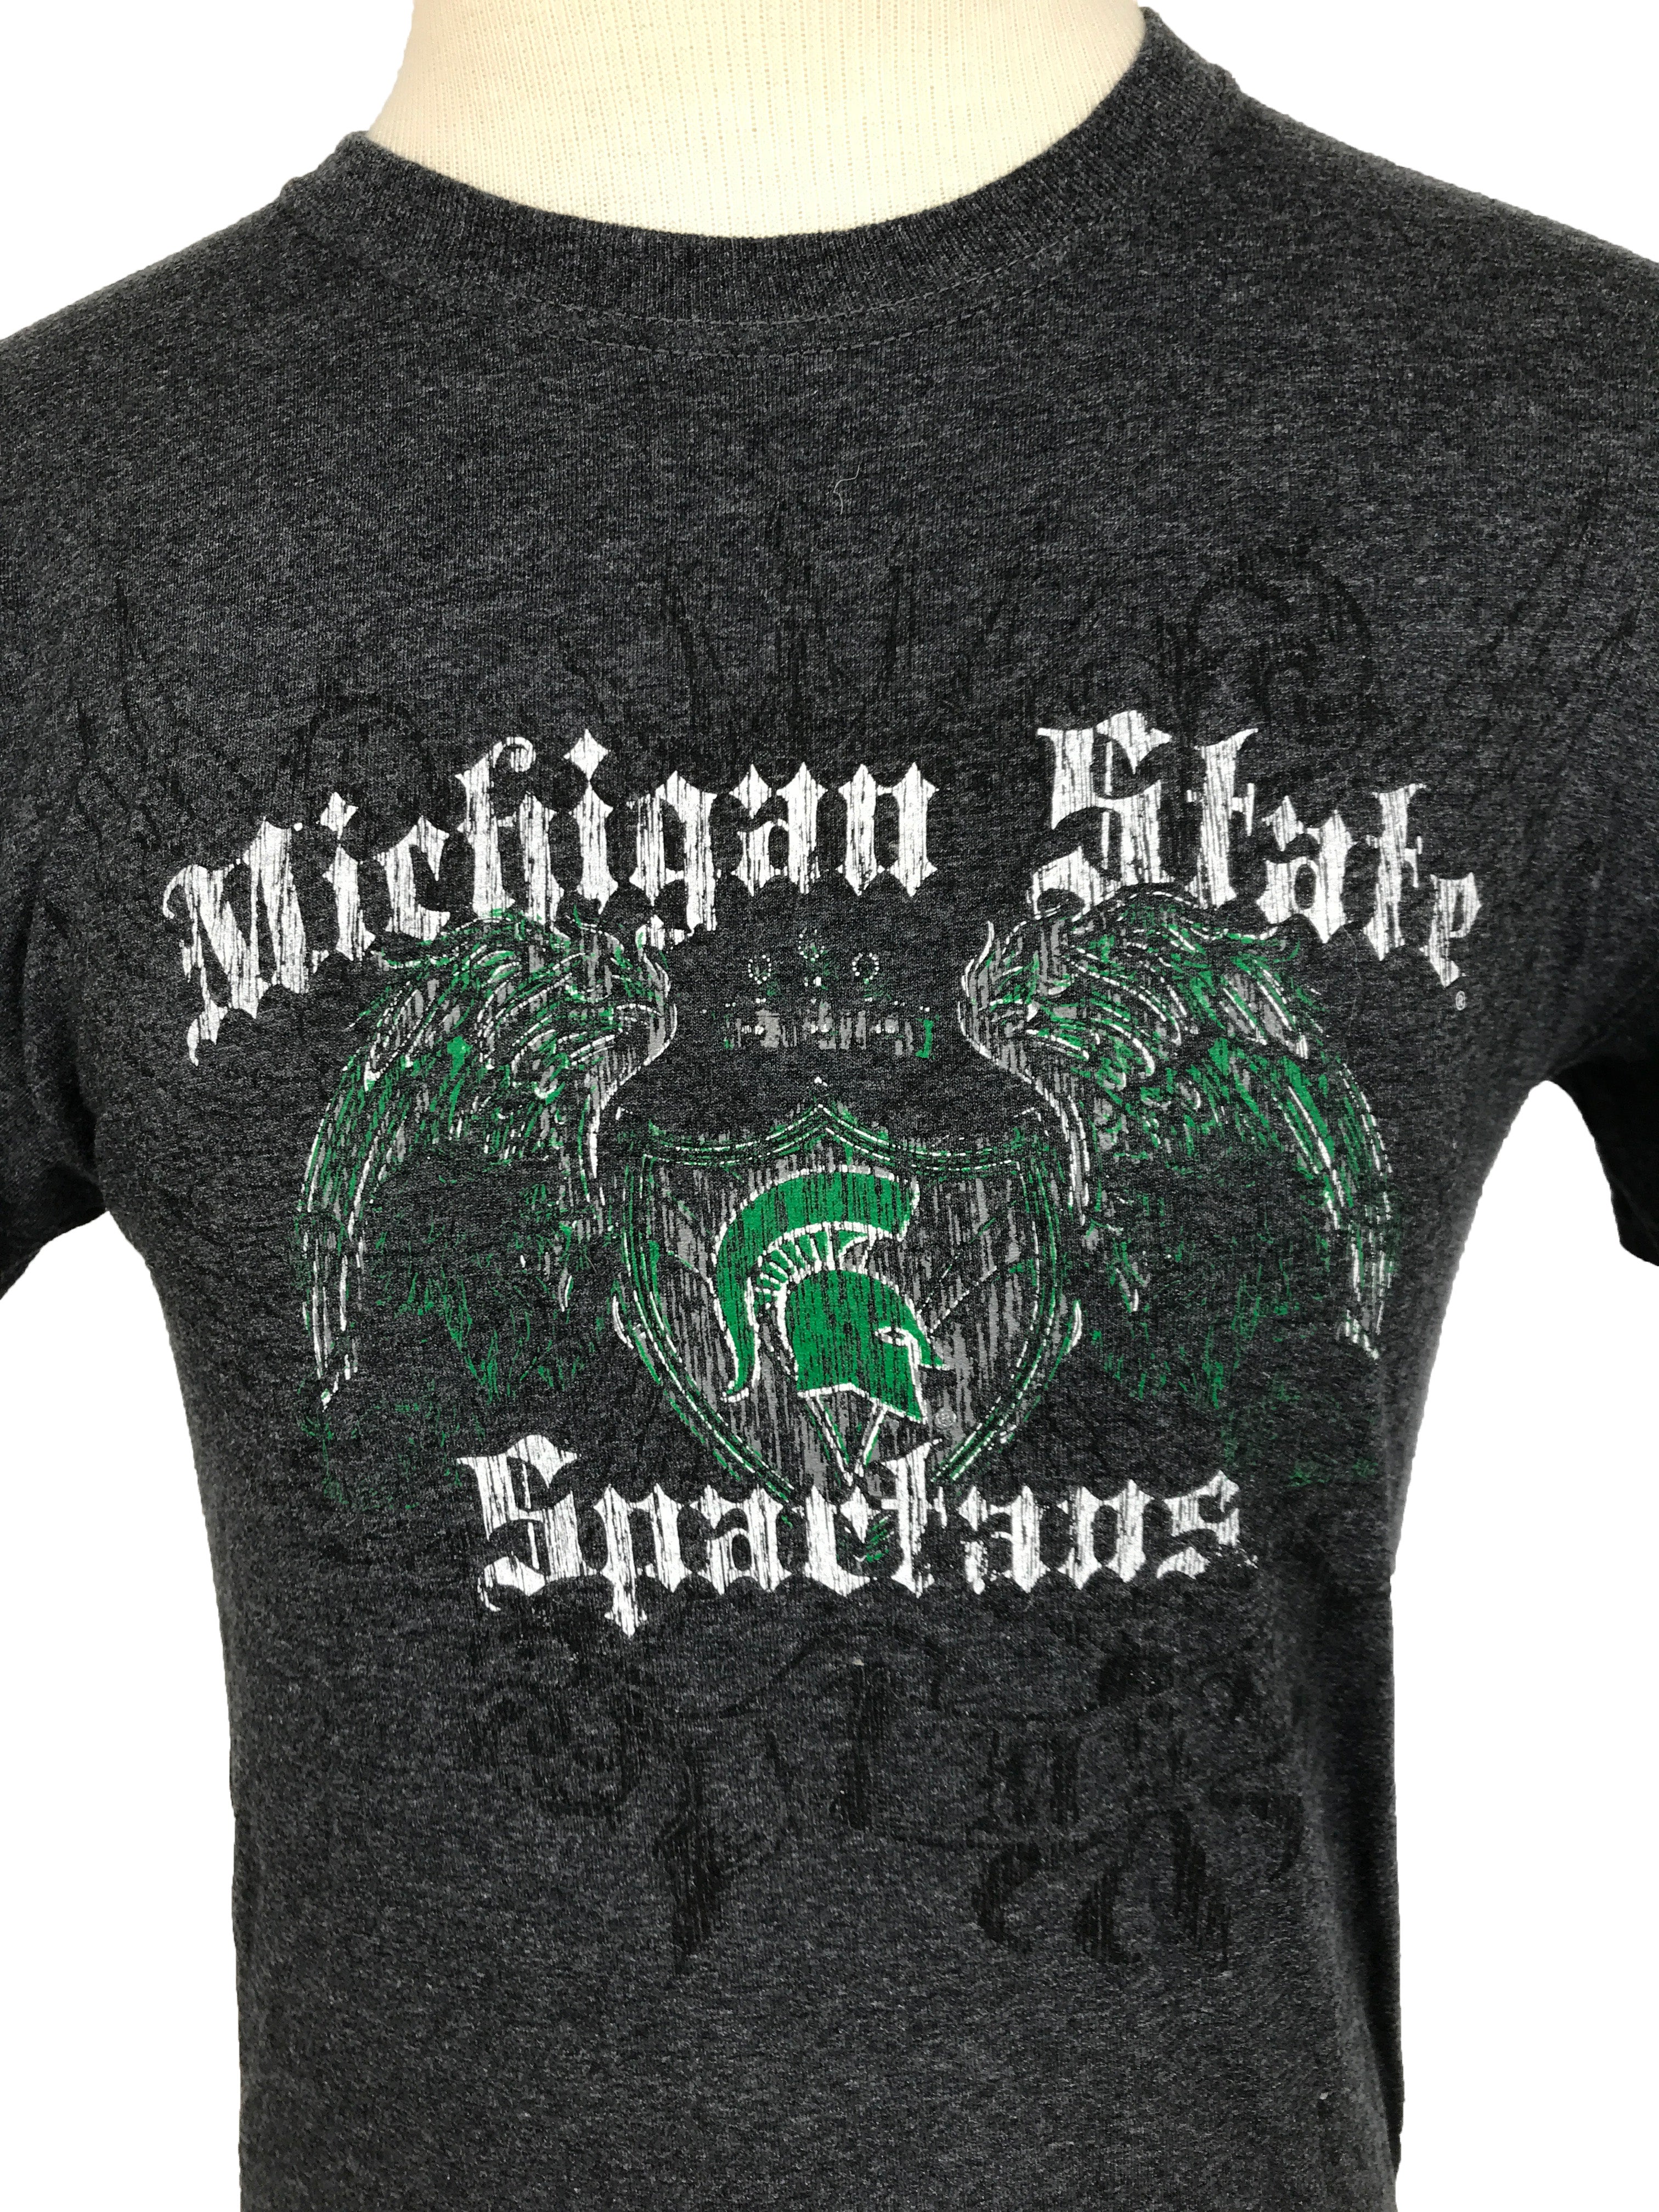 Michigan State University Gray T-Shirt Unisex Size Small